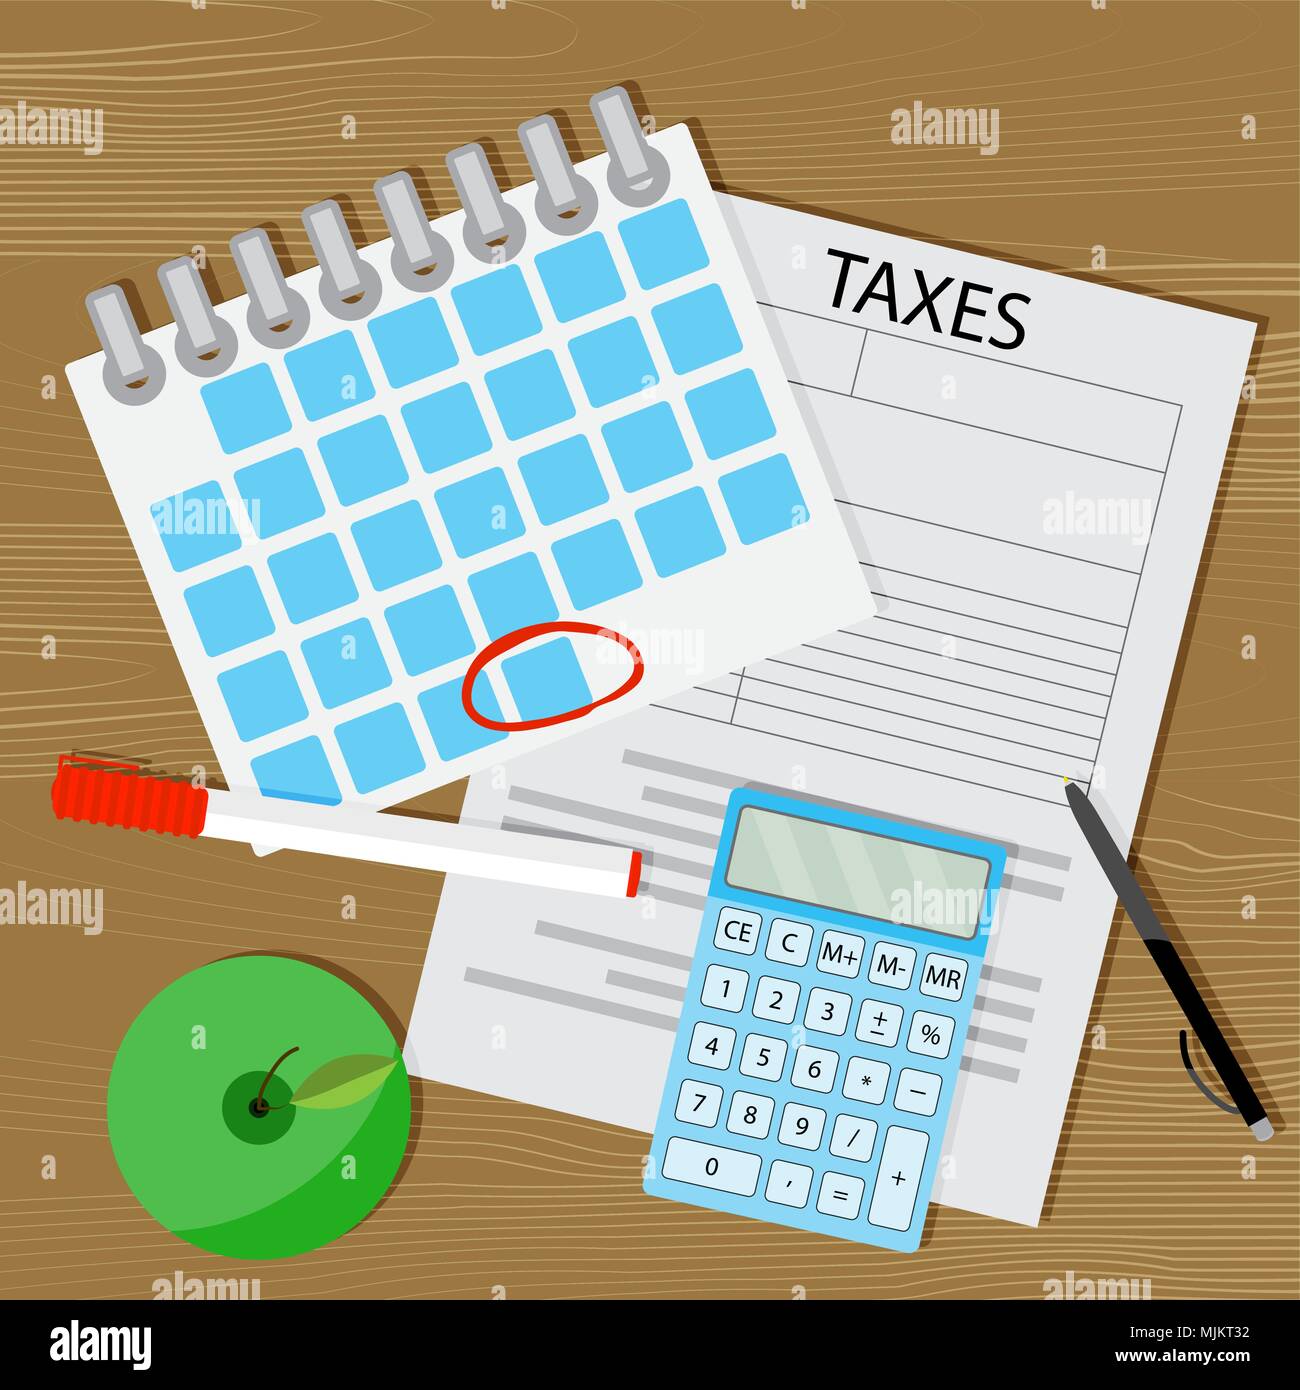 Begriff der Zahlung von Steuern. Vektor Steuererklärung, Kalender mit einer markierten Tag und einen Taschenrechner Abbildung Stock Vektor